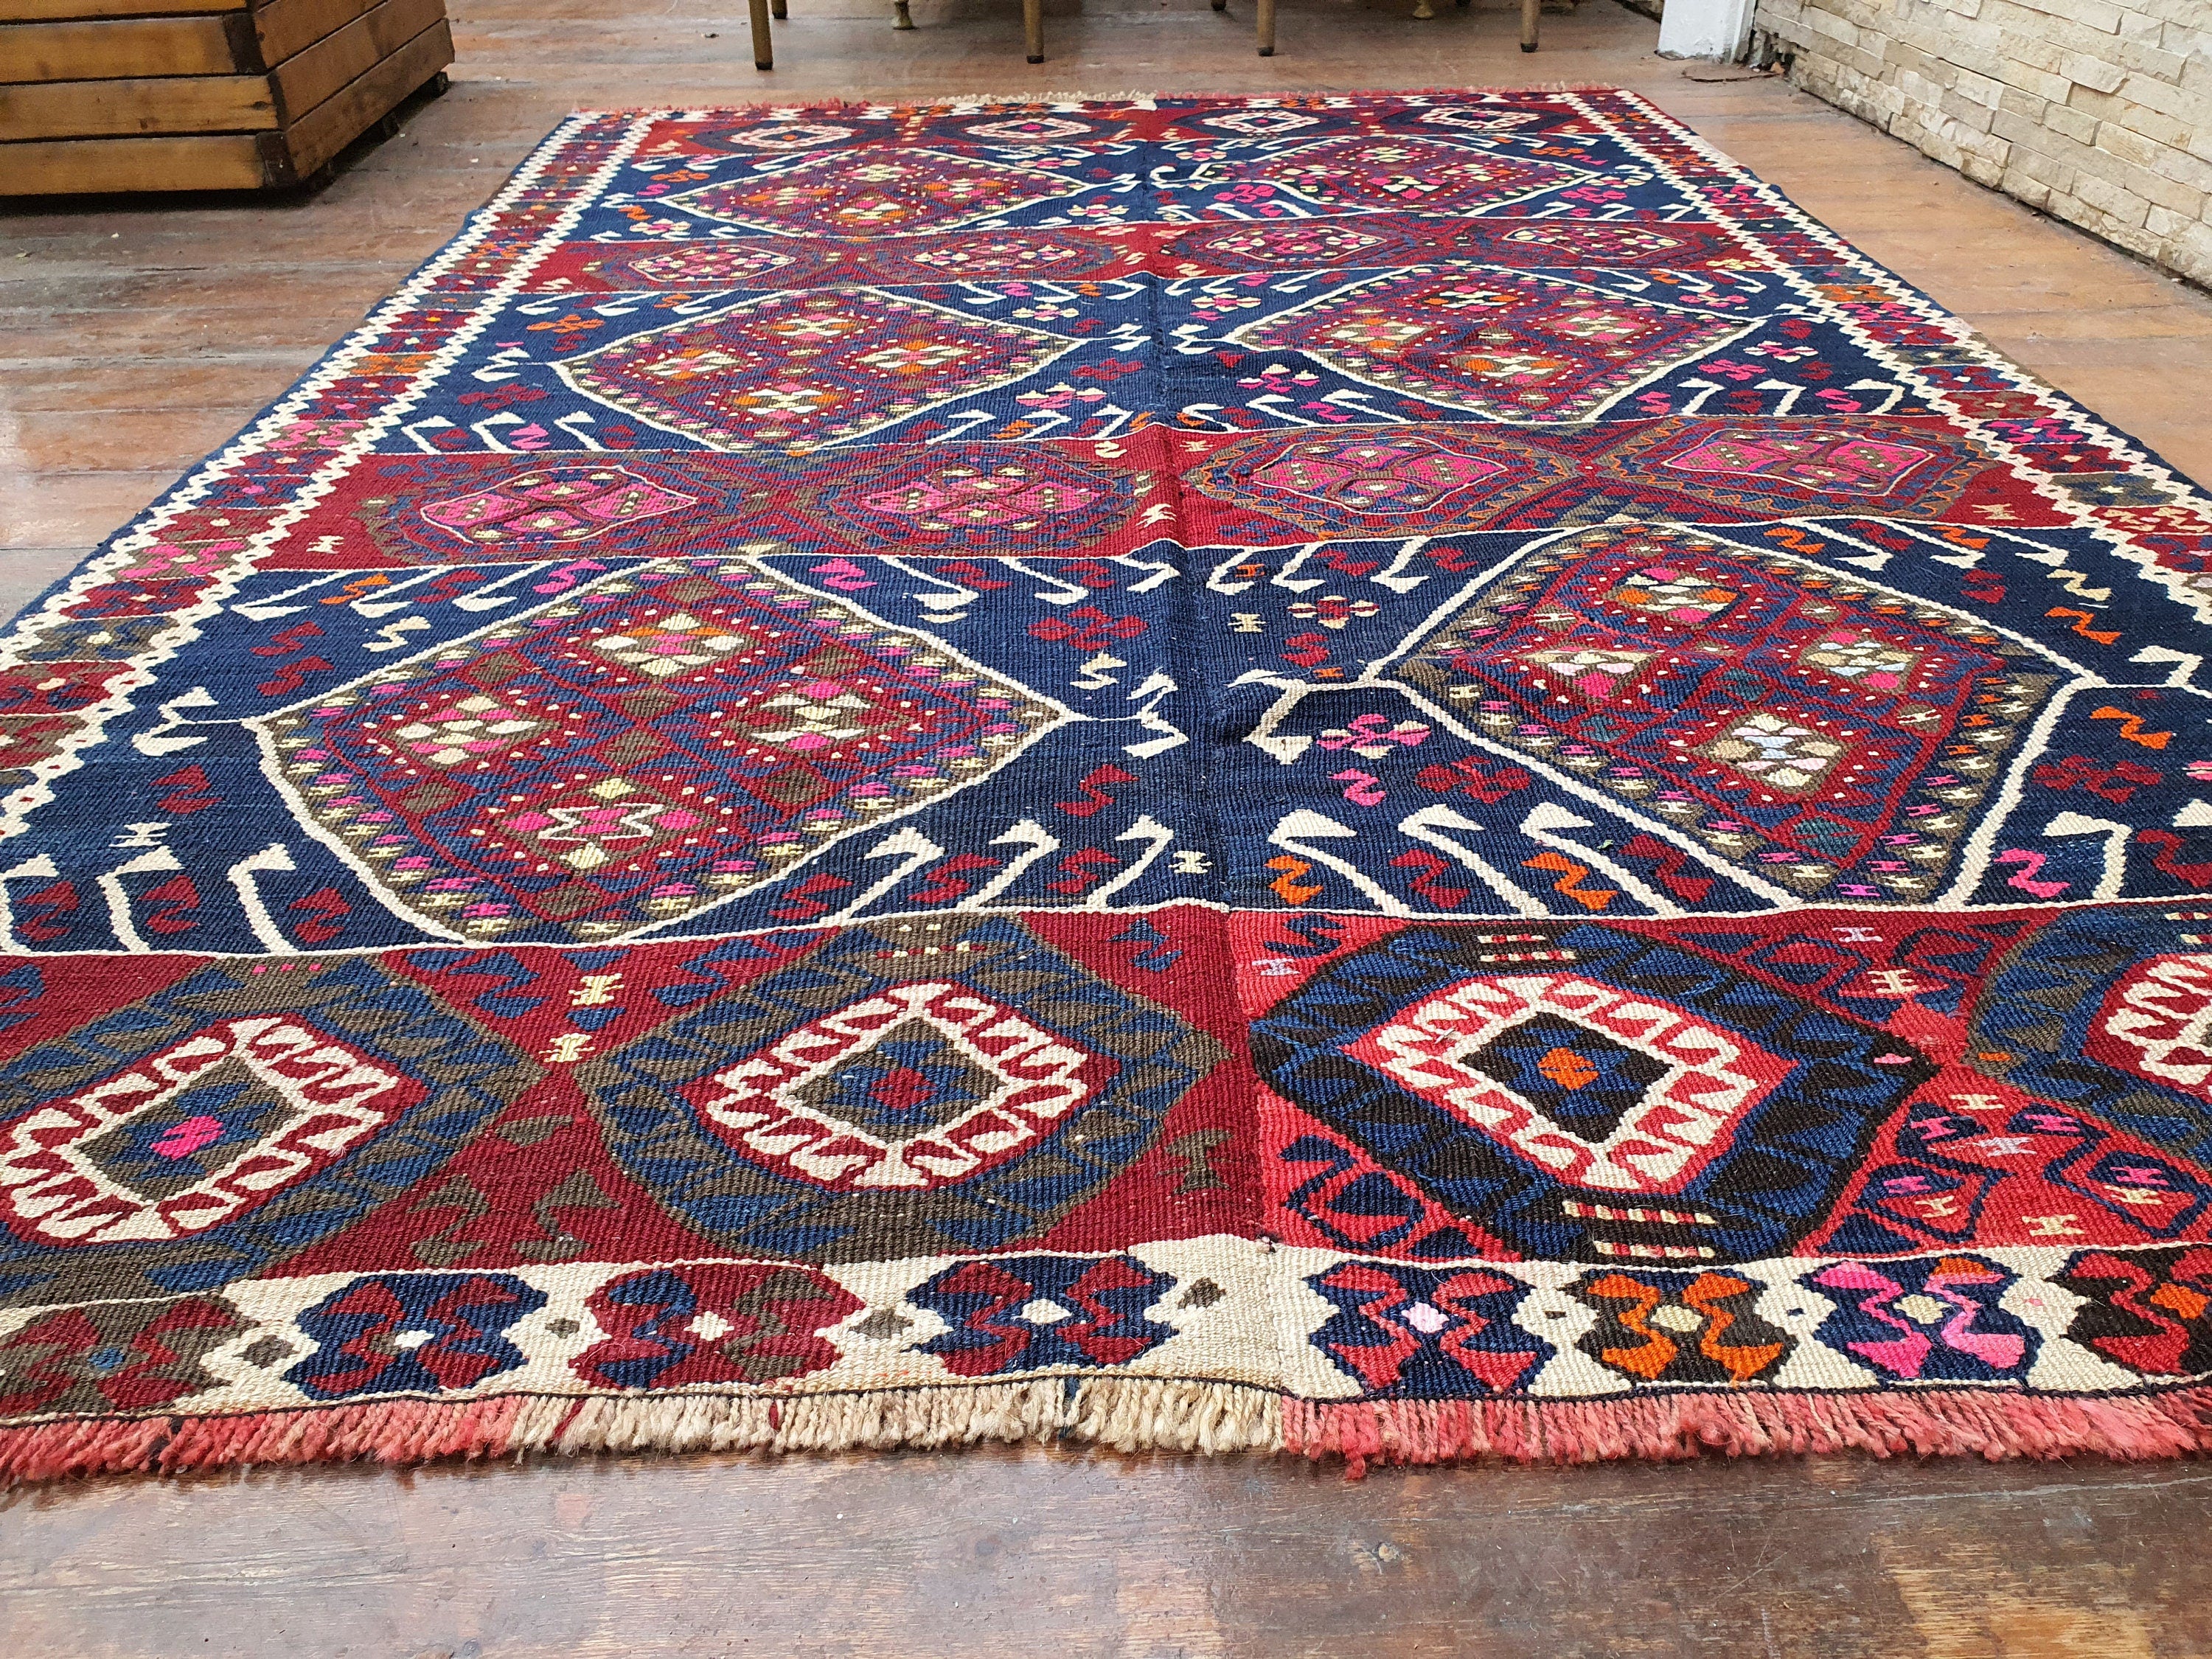 Van Turkish Kilim Rug 7 x 4 ft Handmade Natural Wool Persian Area Rug, Tribal Nomadic Boho Rustic Decor Moroccan Berber Living Room Rug